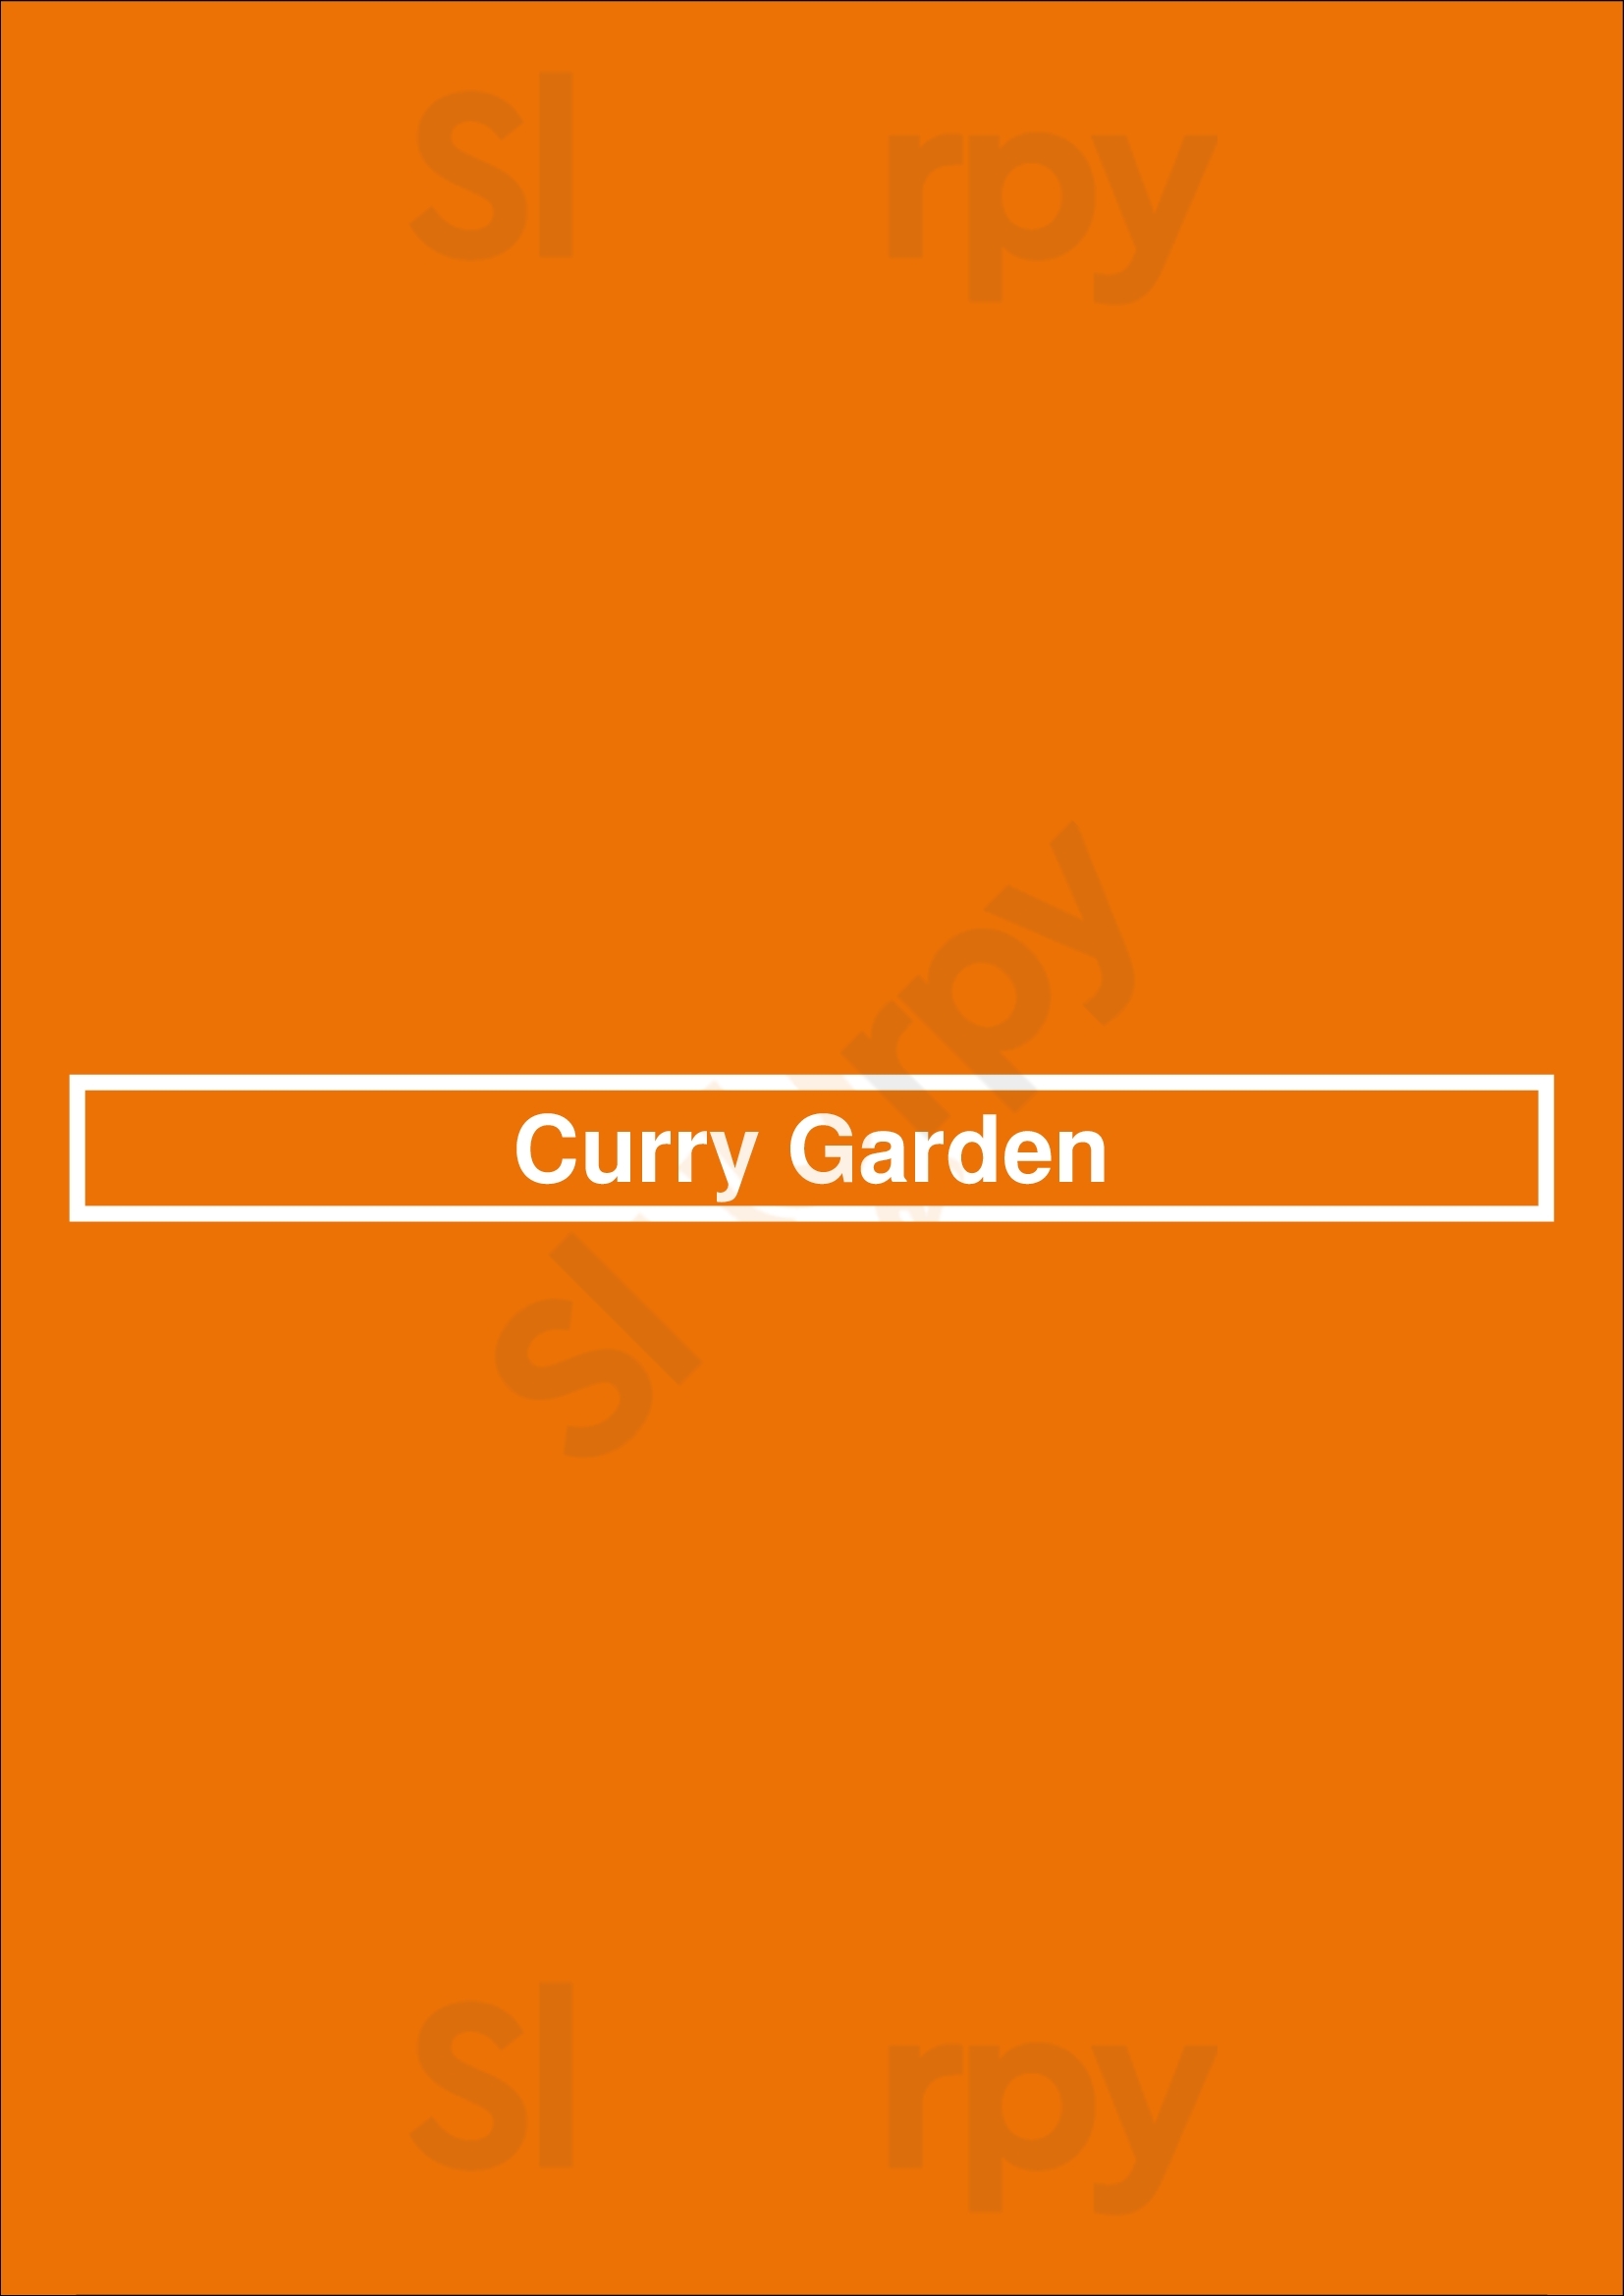 Curry Garden Bendigo Menu - 1